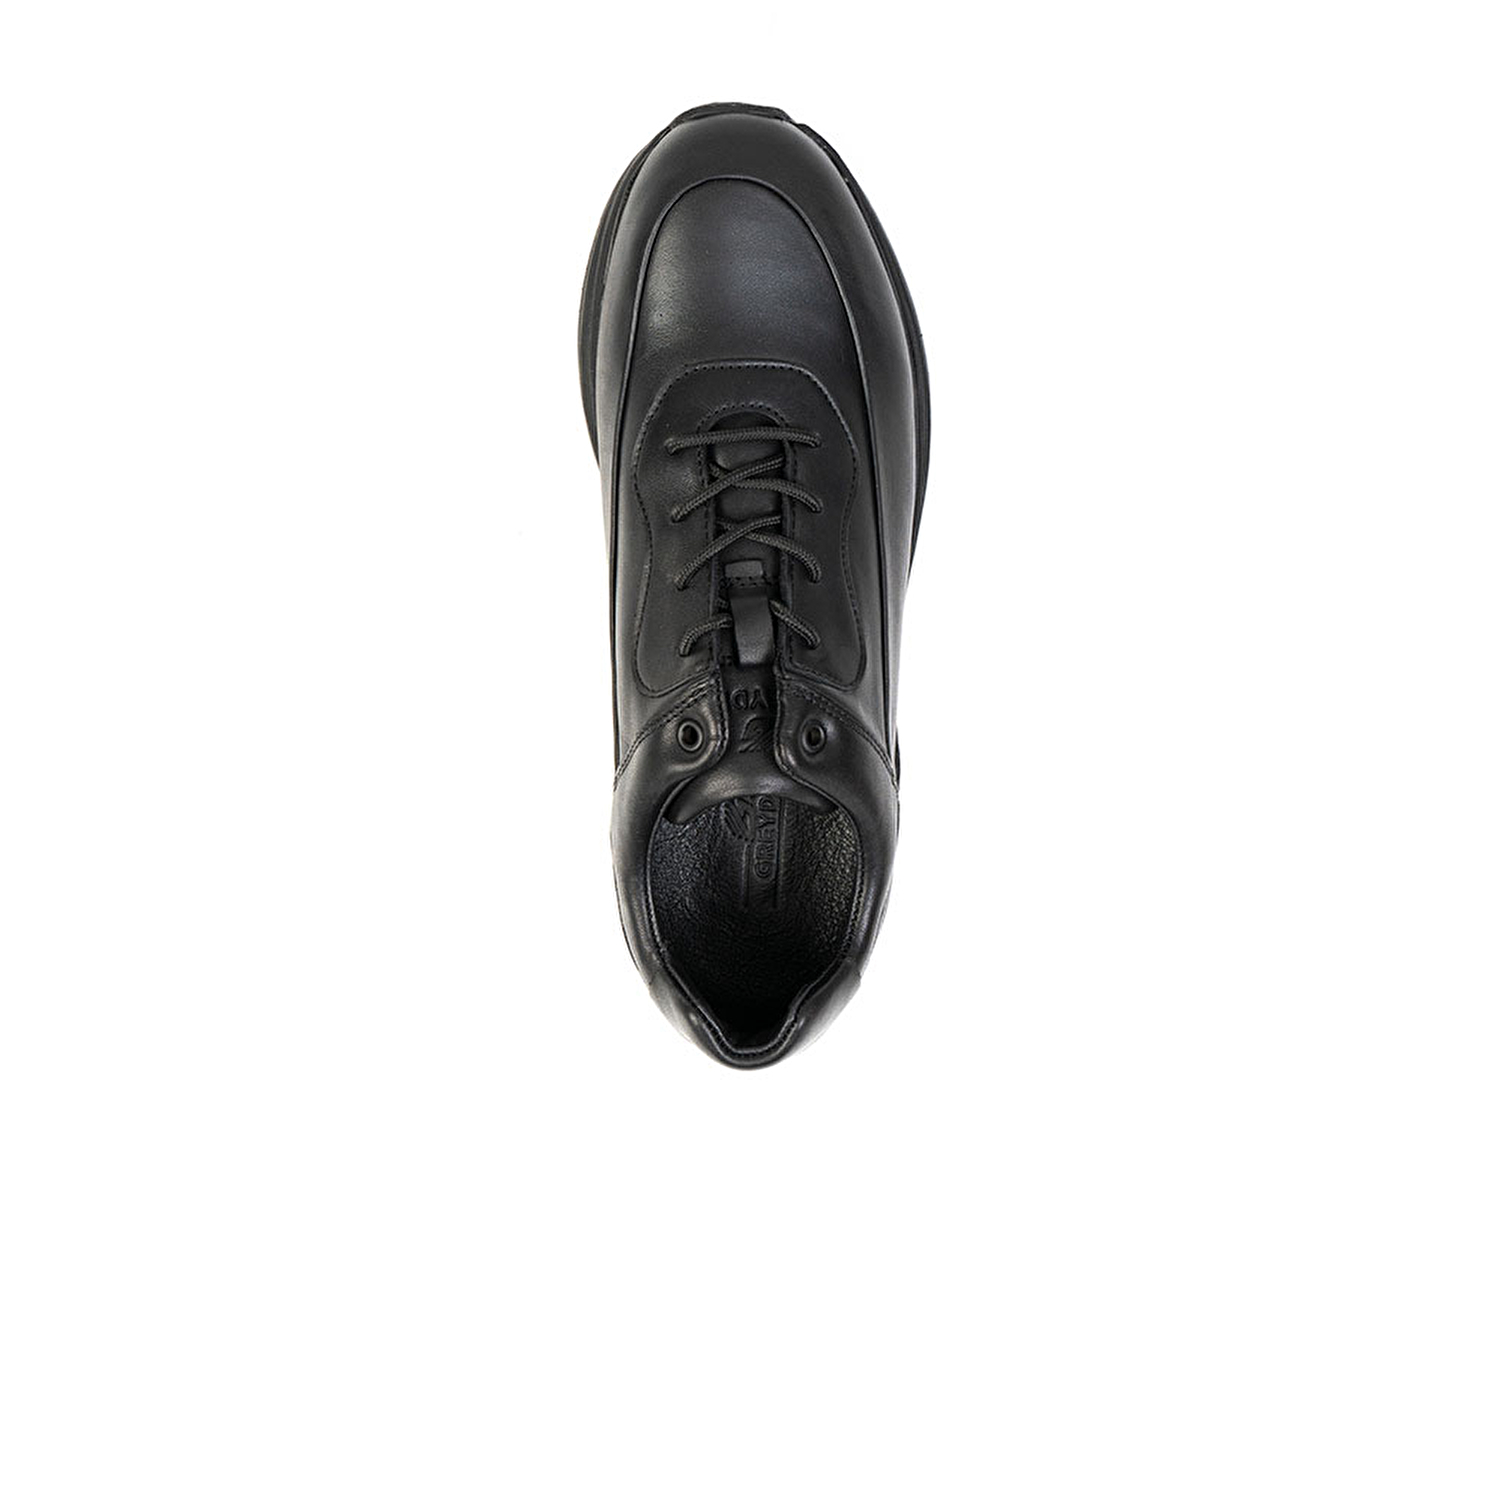 Erkek Ayakkabı Siyah 14511-5